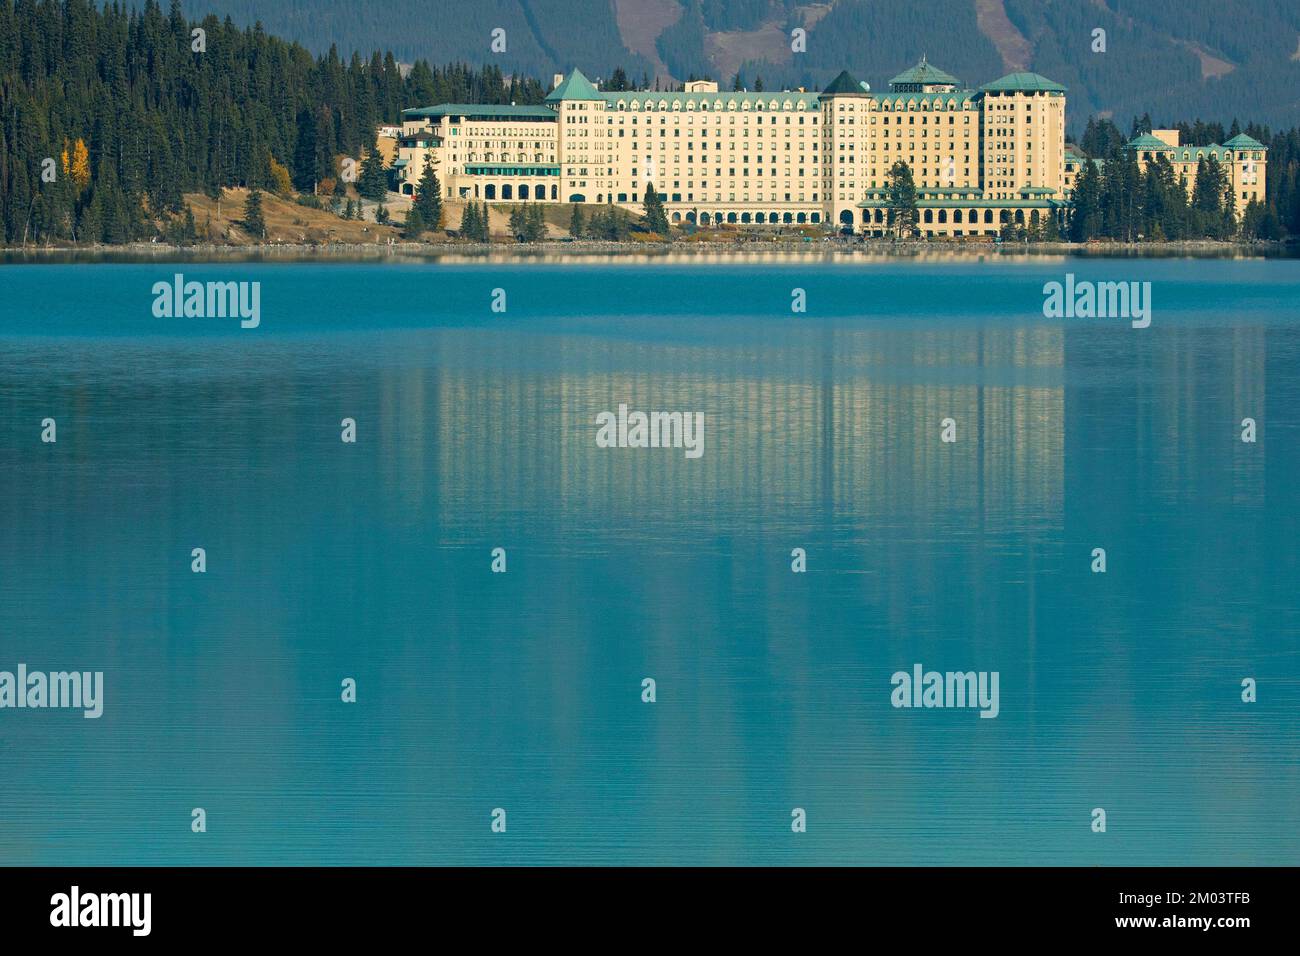 Hôtel Fairmont Chateau Lake Louise surplombant les eaux turquoise du lac Louise, dans le parc national Banff, Canada Banque D'Images